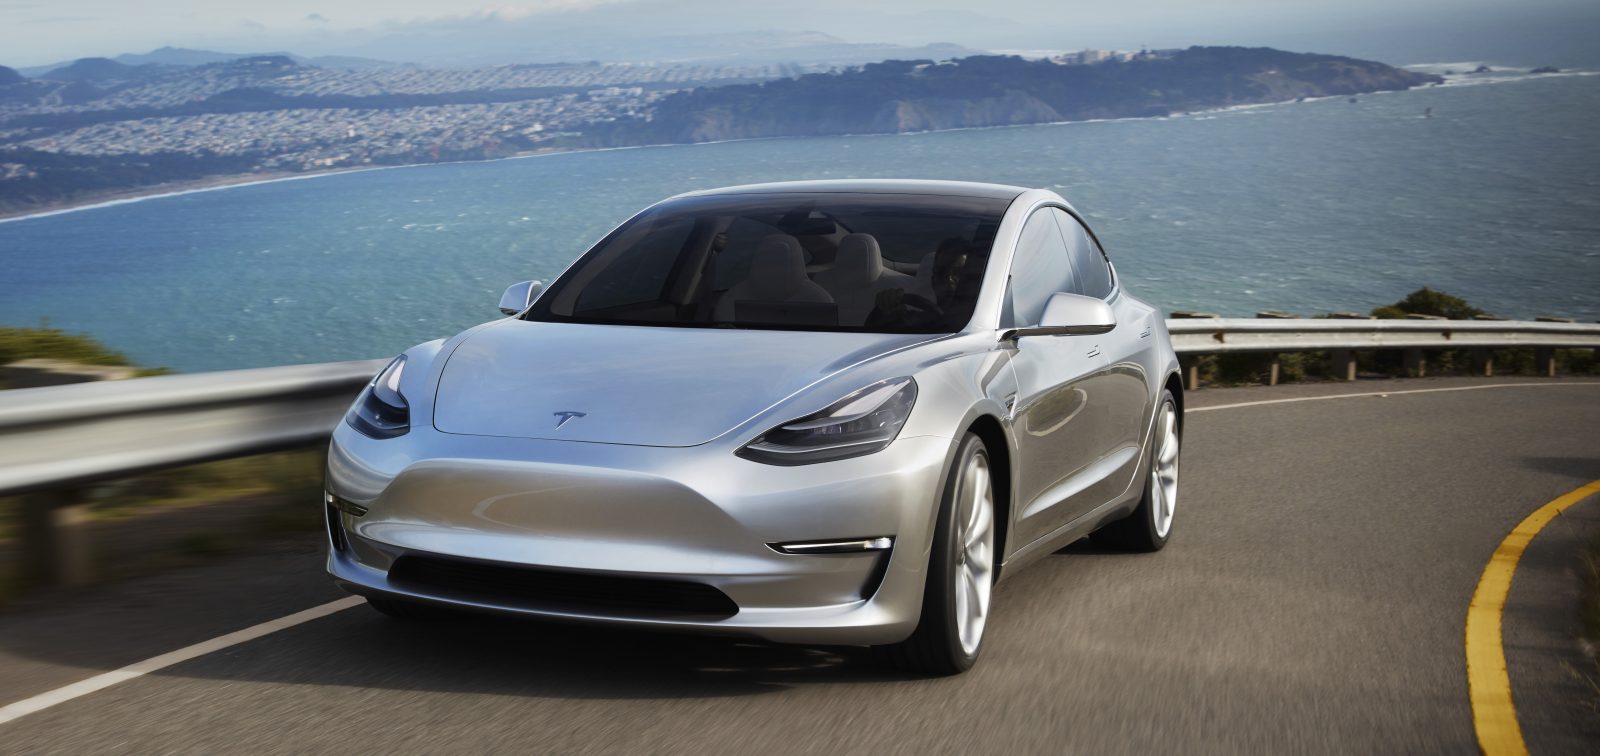 Tesla fecha lojas físicas para iniciar vendas do Model 3, promessa de Musk